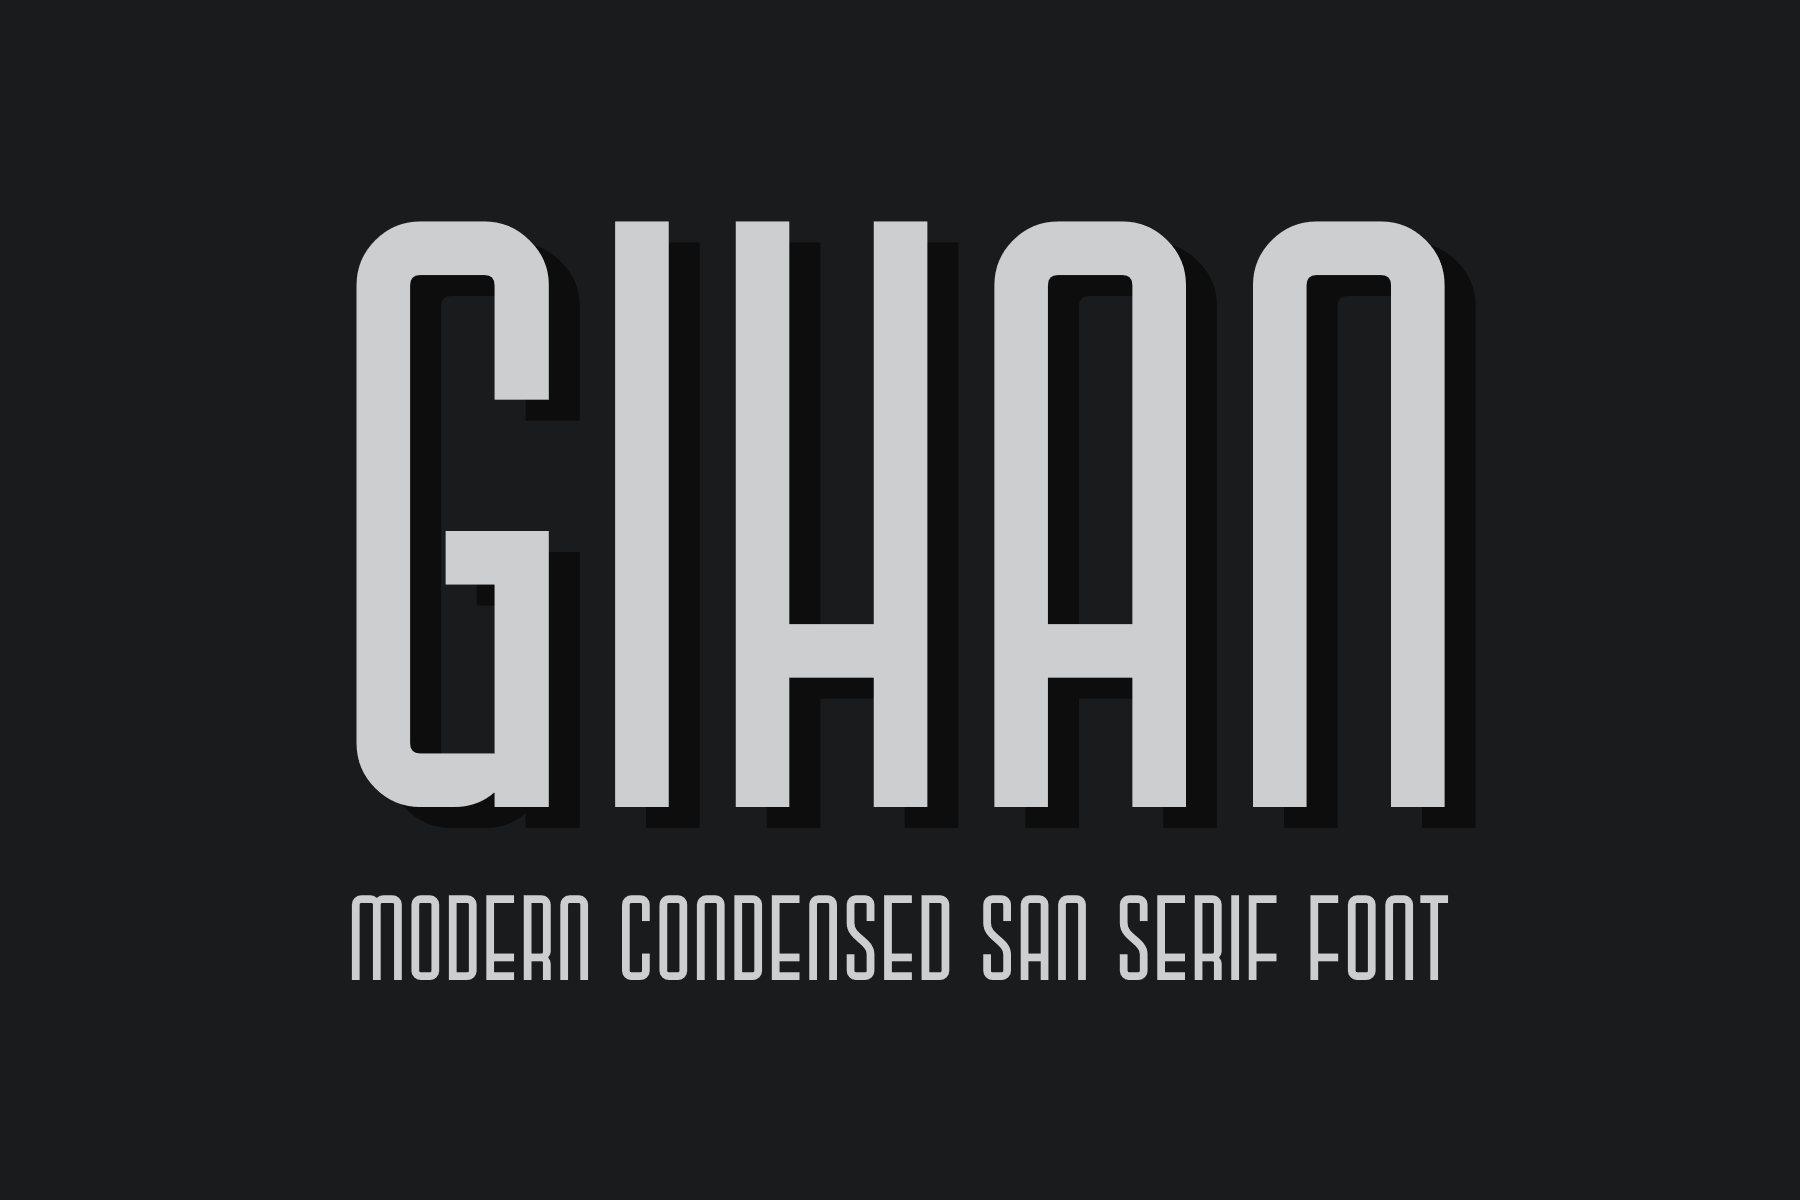 Gihan Font